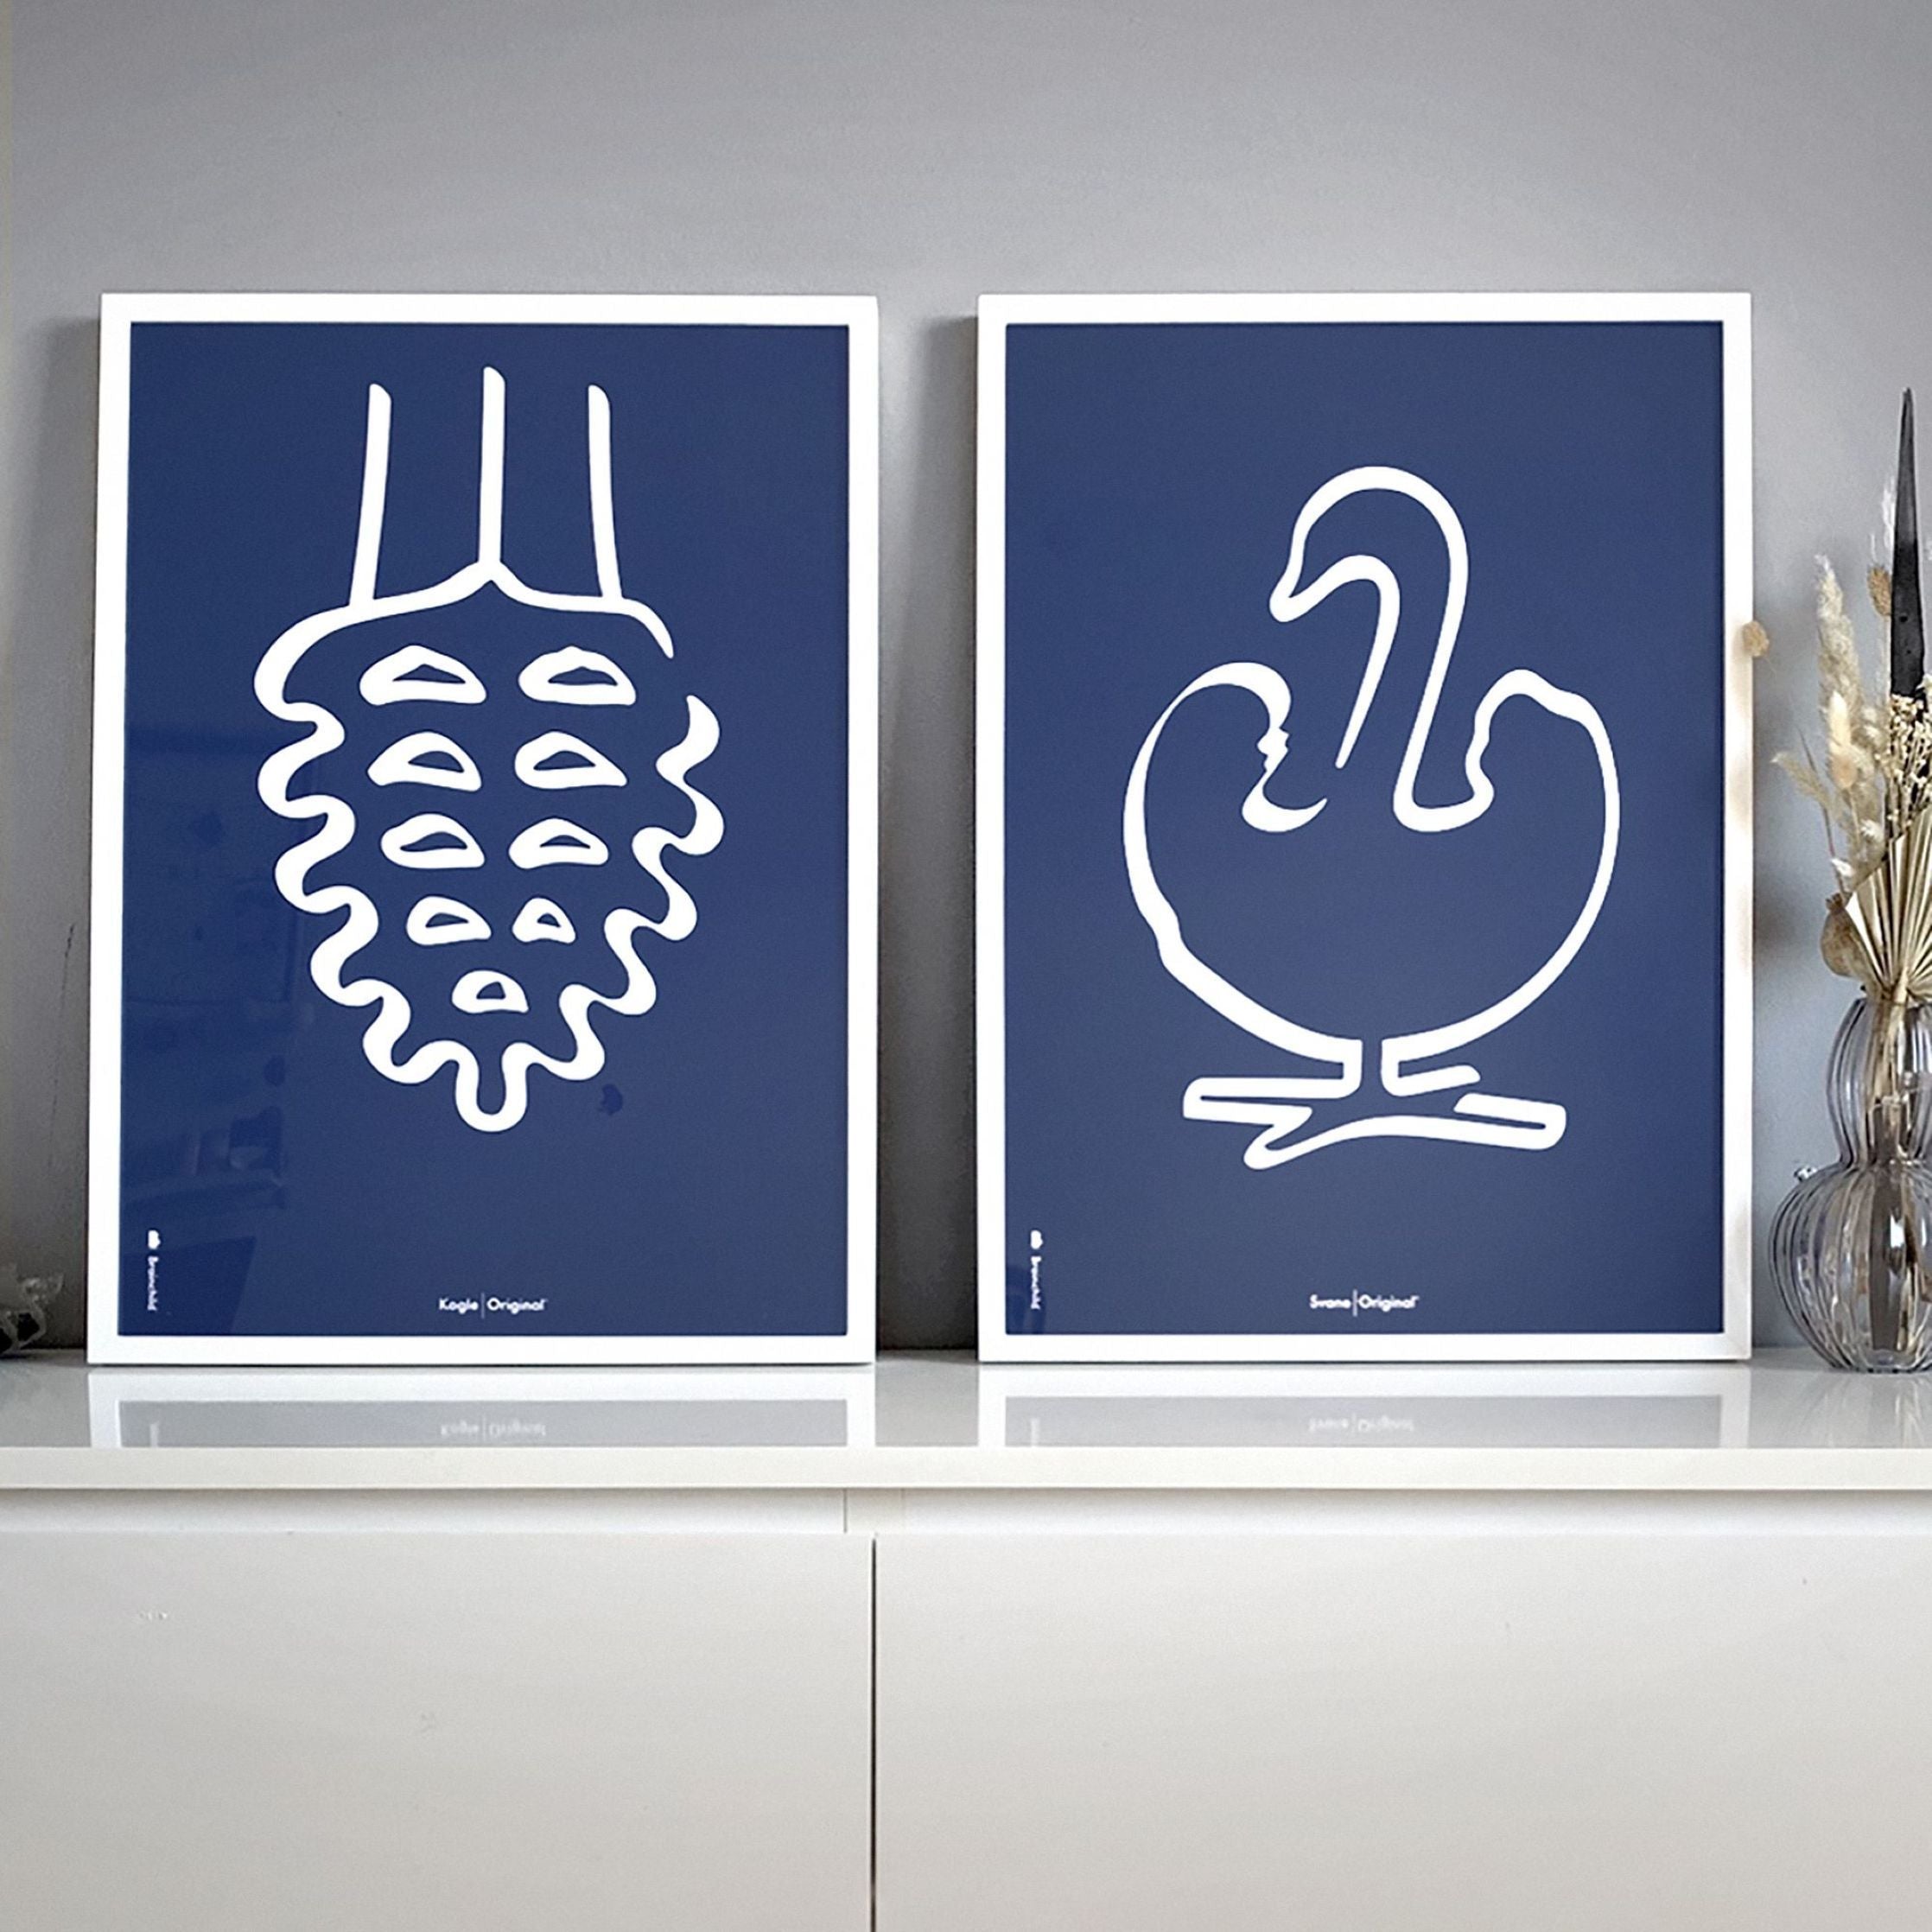 Brainchild Tallkotte Line Affisch, ram gjord av lätt trä 30x40 cm, blå bakgrund